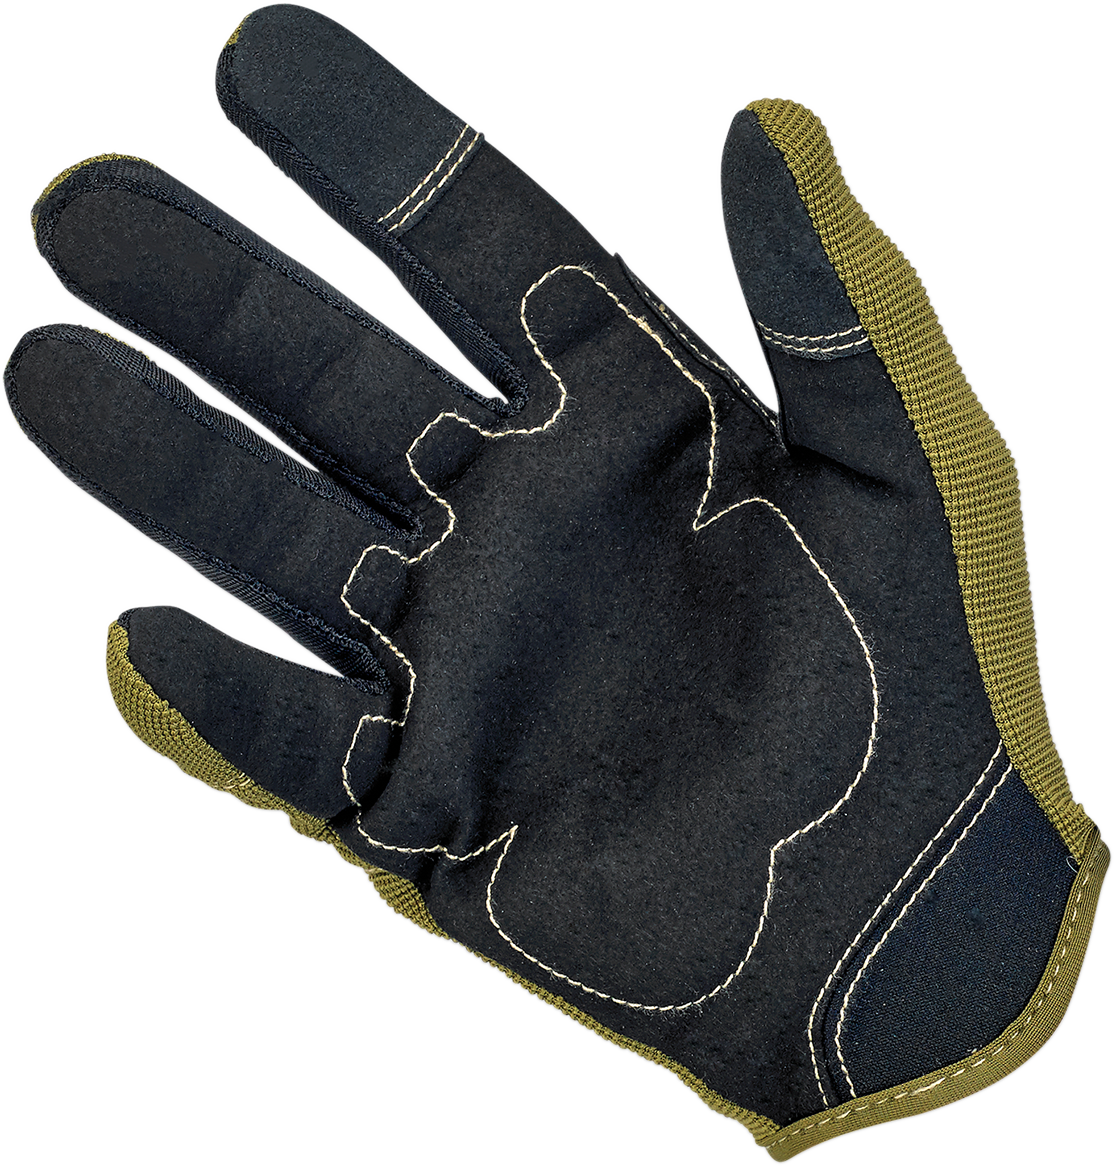 BILTWELL Moto Gloves - Olive/Black